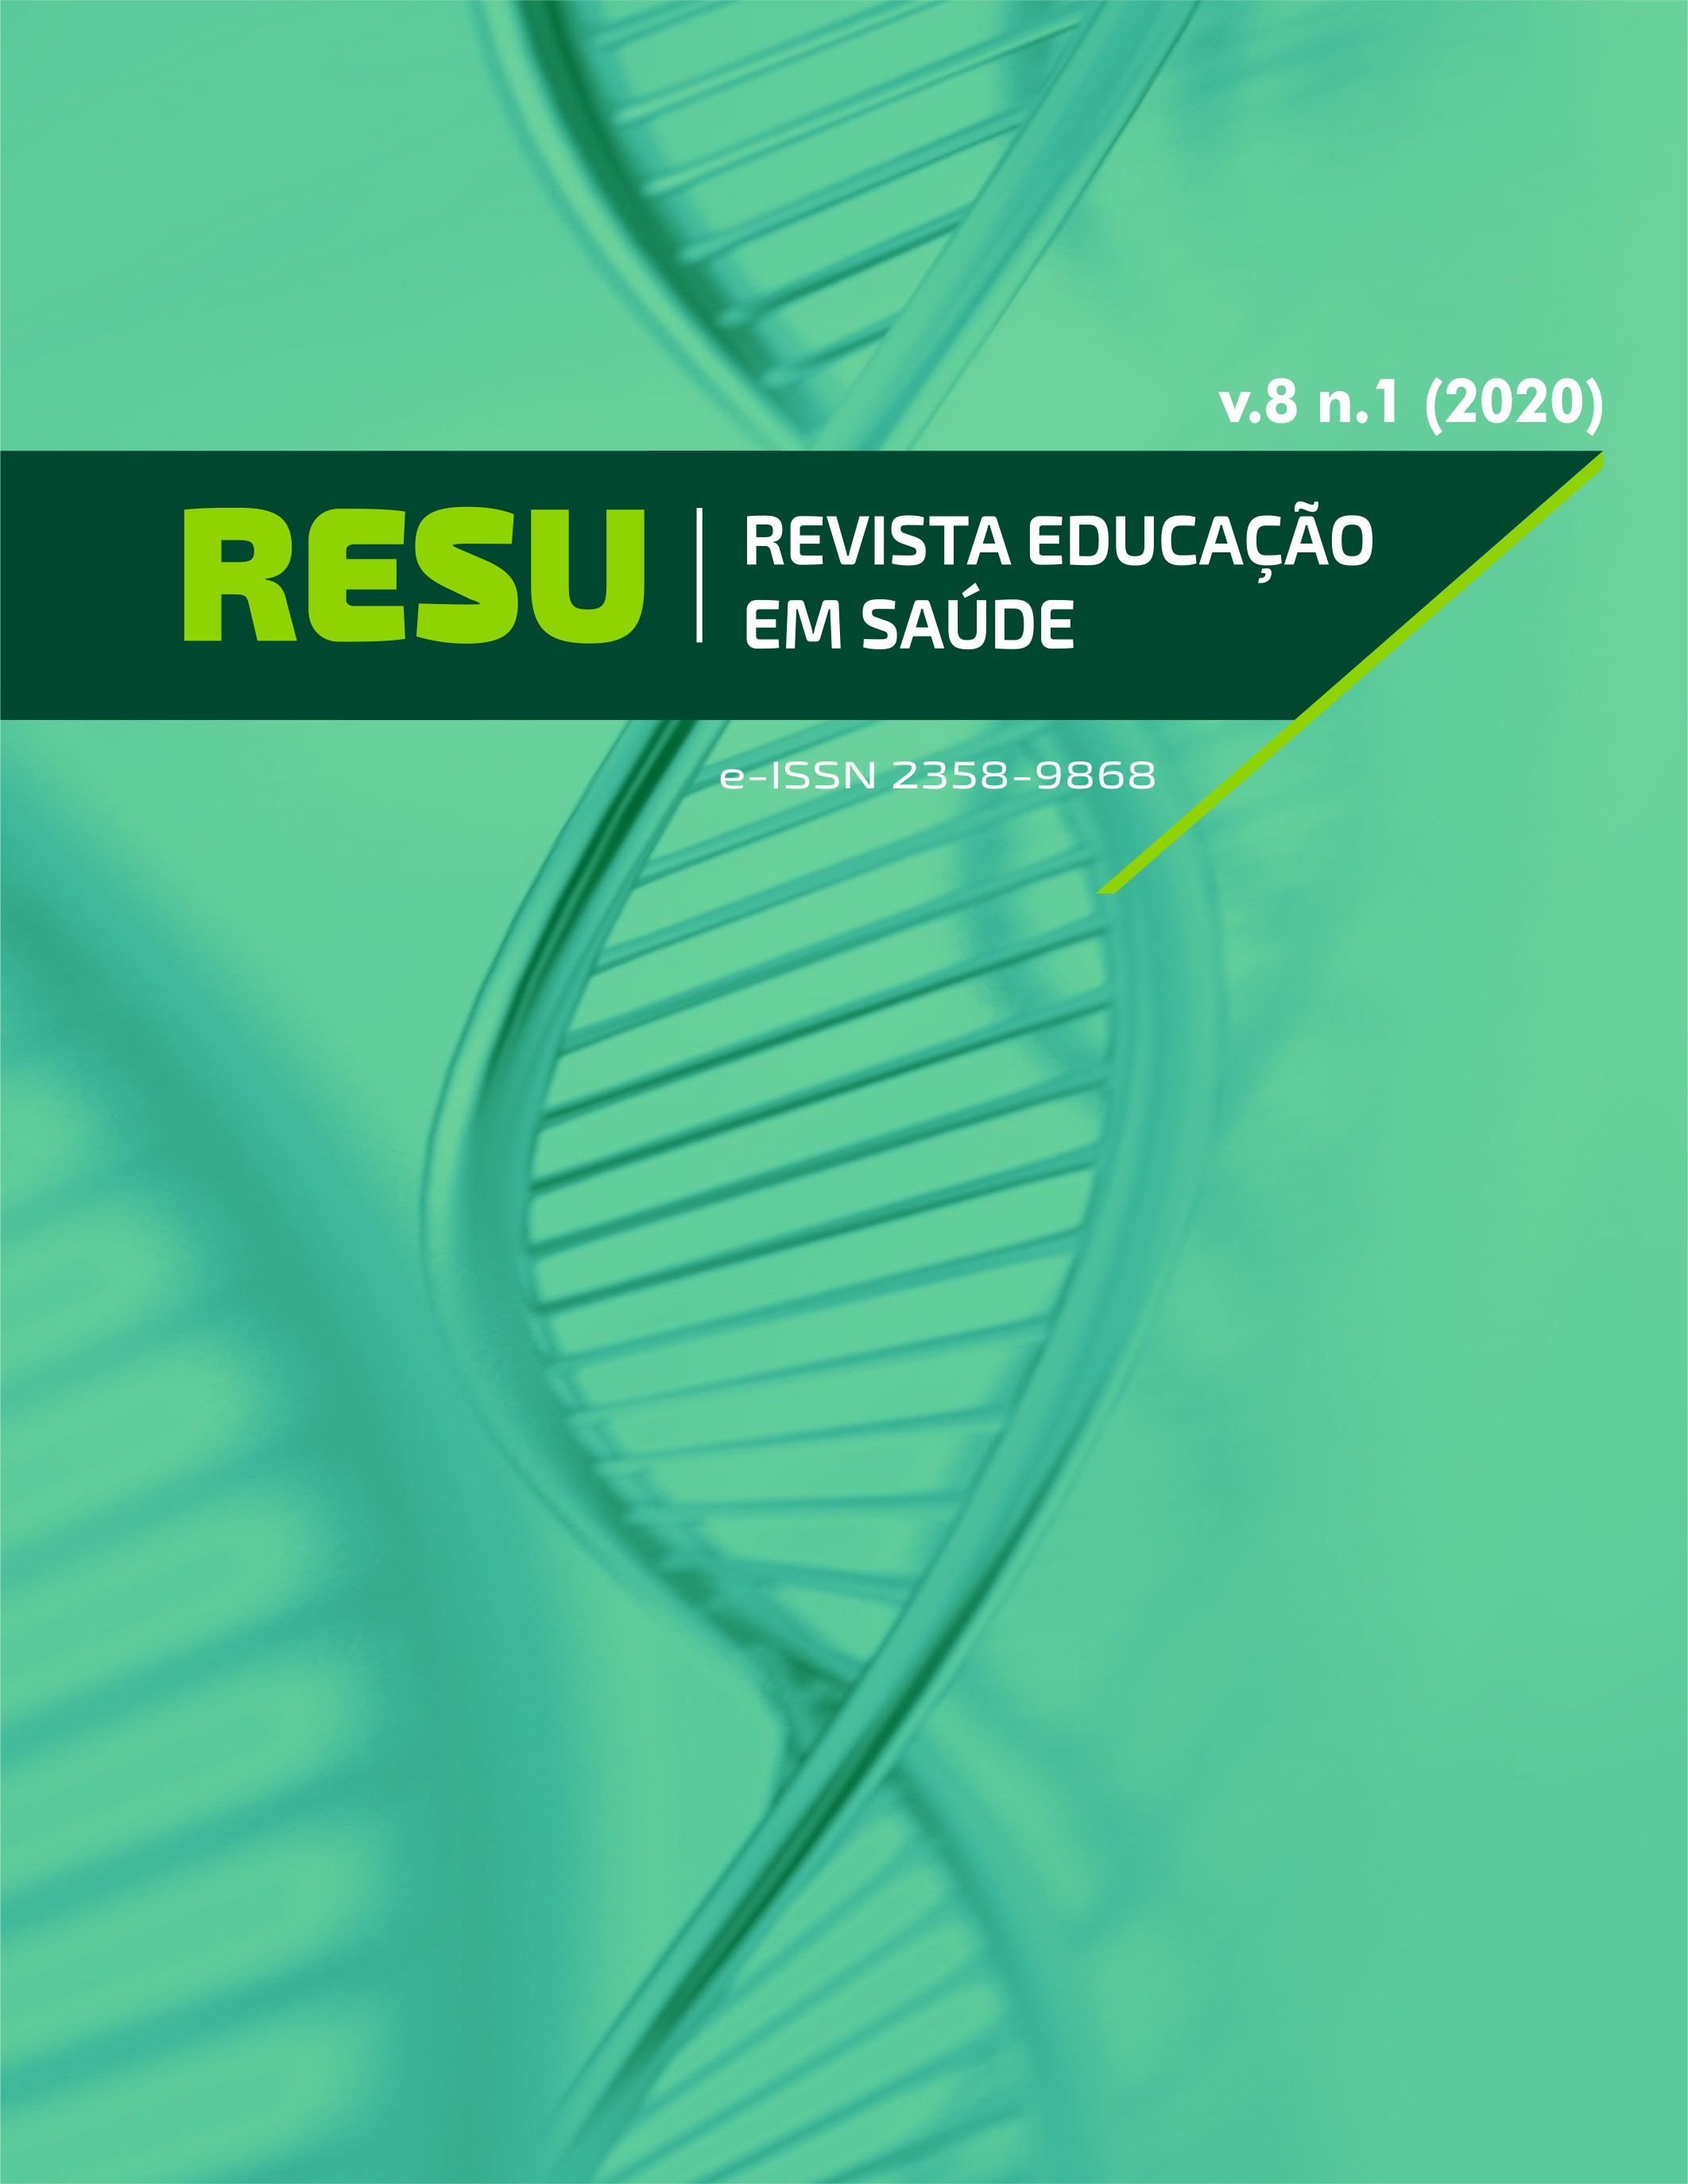 					Visualizar v. 8 n. 1 (2020): RESU - REVISTA EDUCAÇÃO EM SAÚDE
				